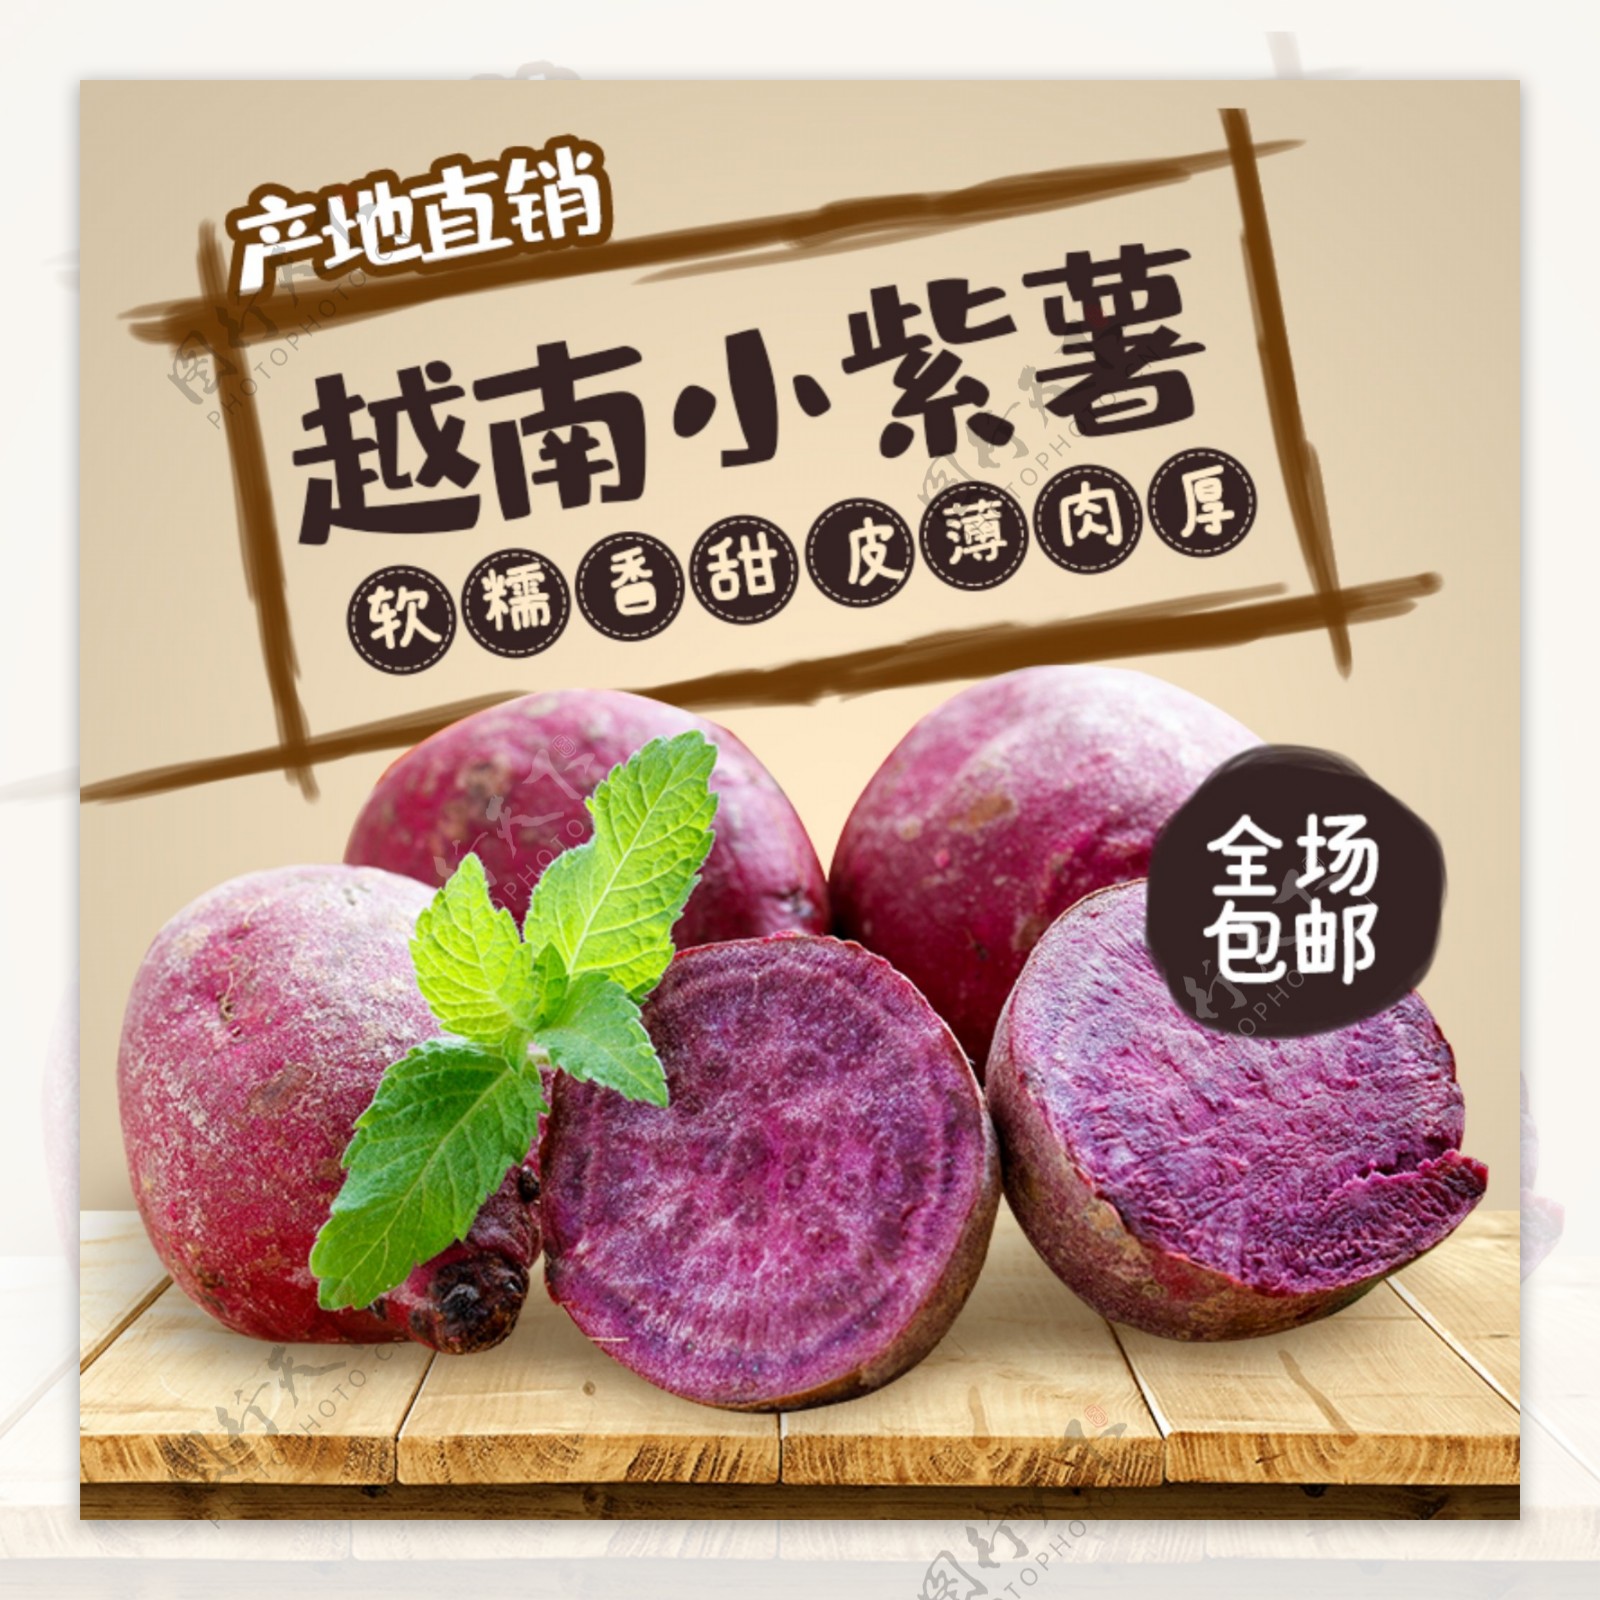 农产品紫薯主图车图